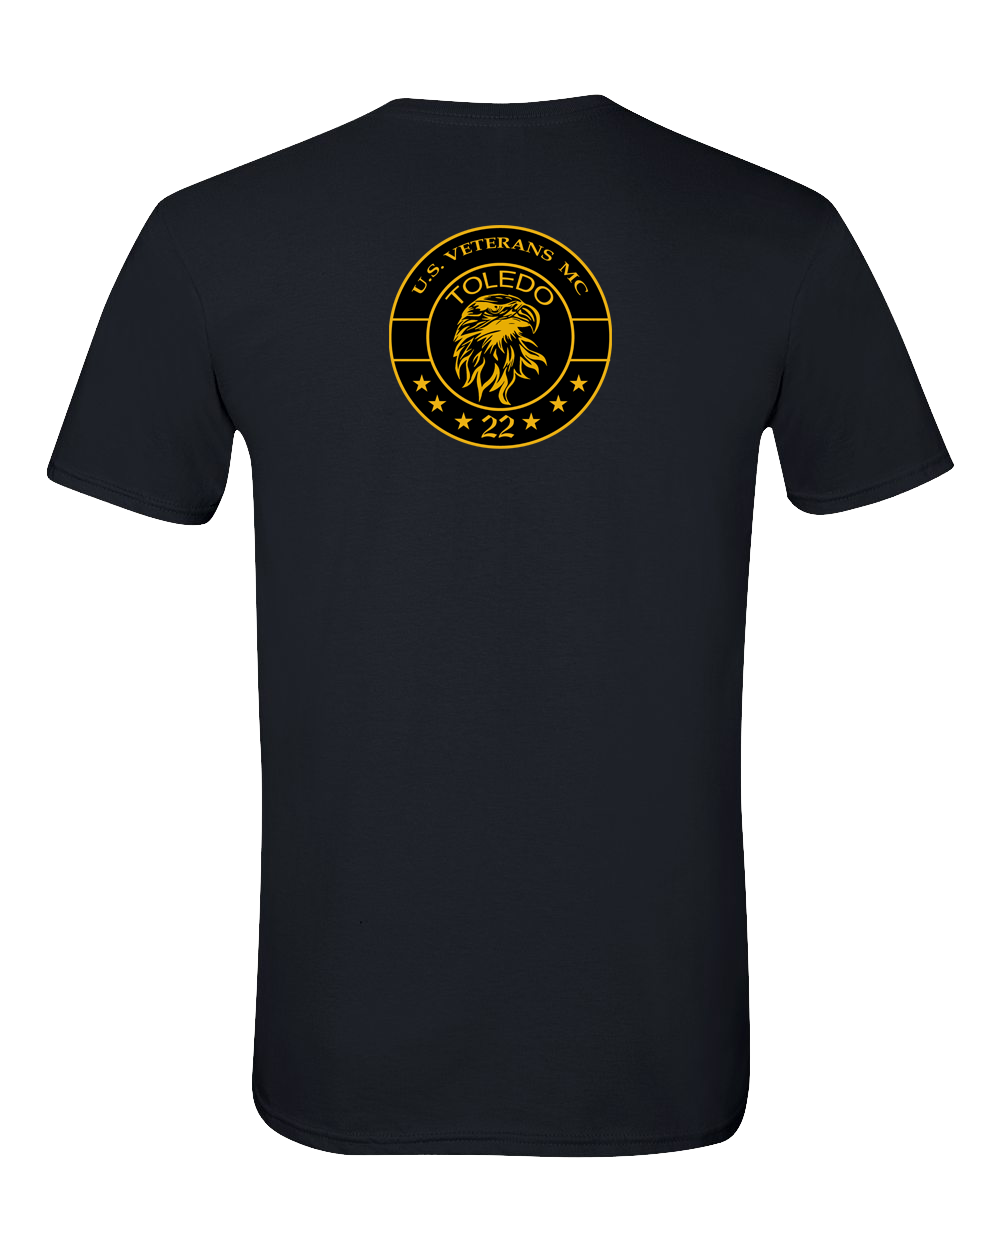 USVMC T-Shirt